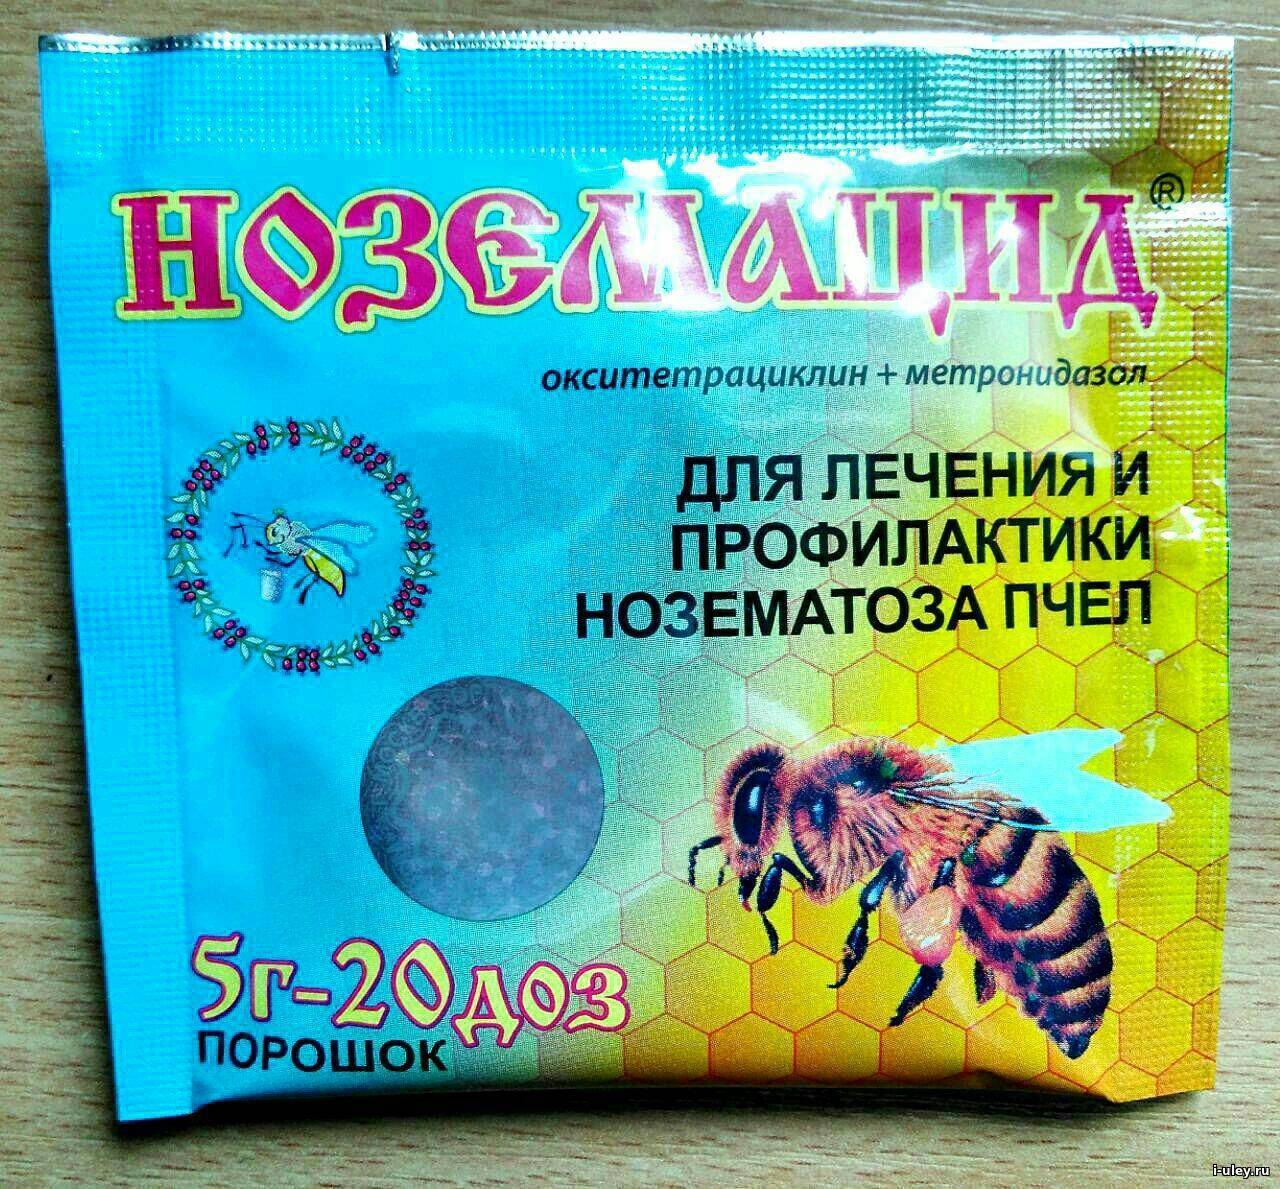 Купить лекарства и препараты от нозематоза | магазин пчеловодства "пчеловод ком"